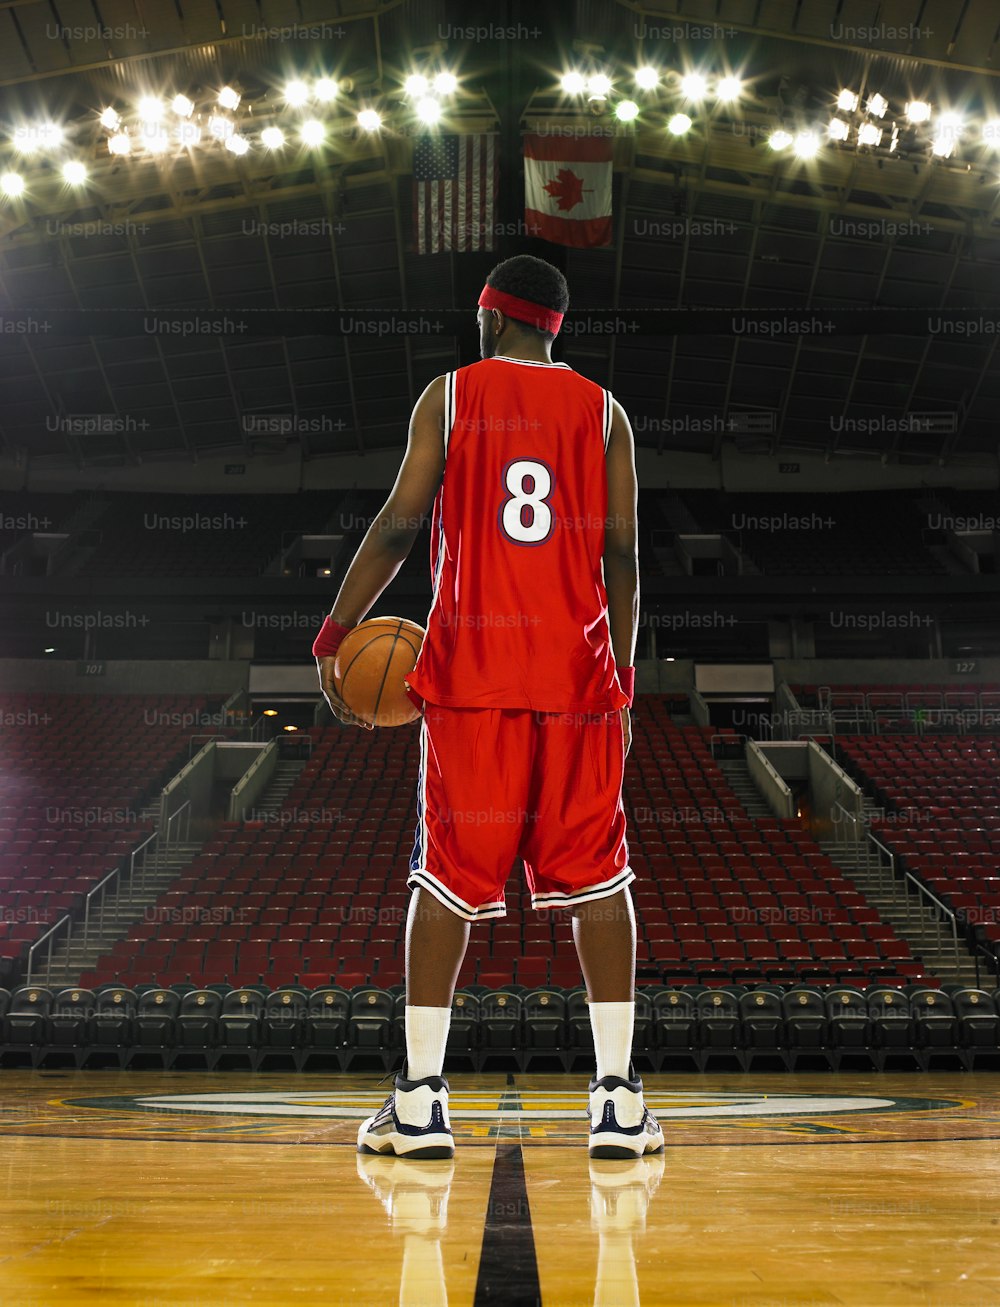 Un jugador de baloncesto con un uniforme rojo sosteniendo una pelota de baloncesto